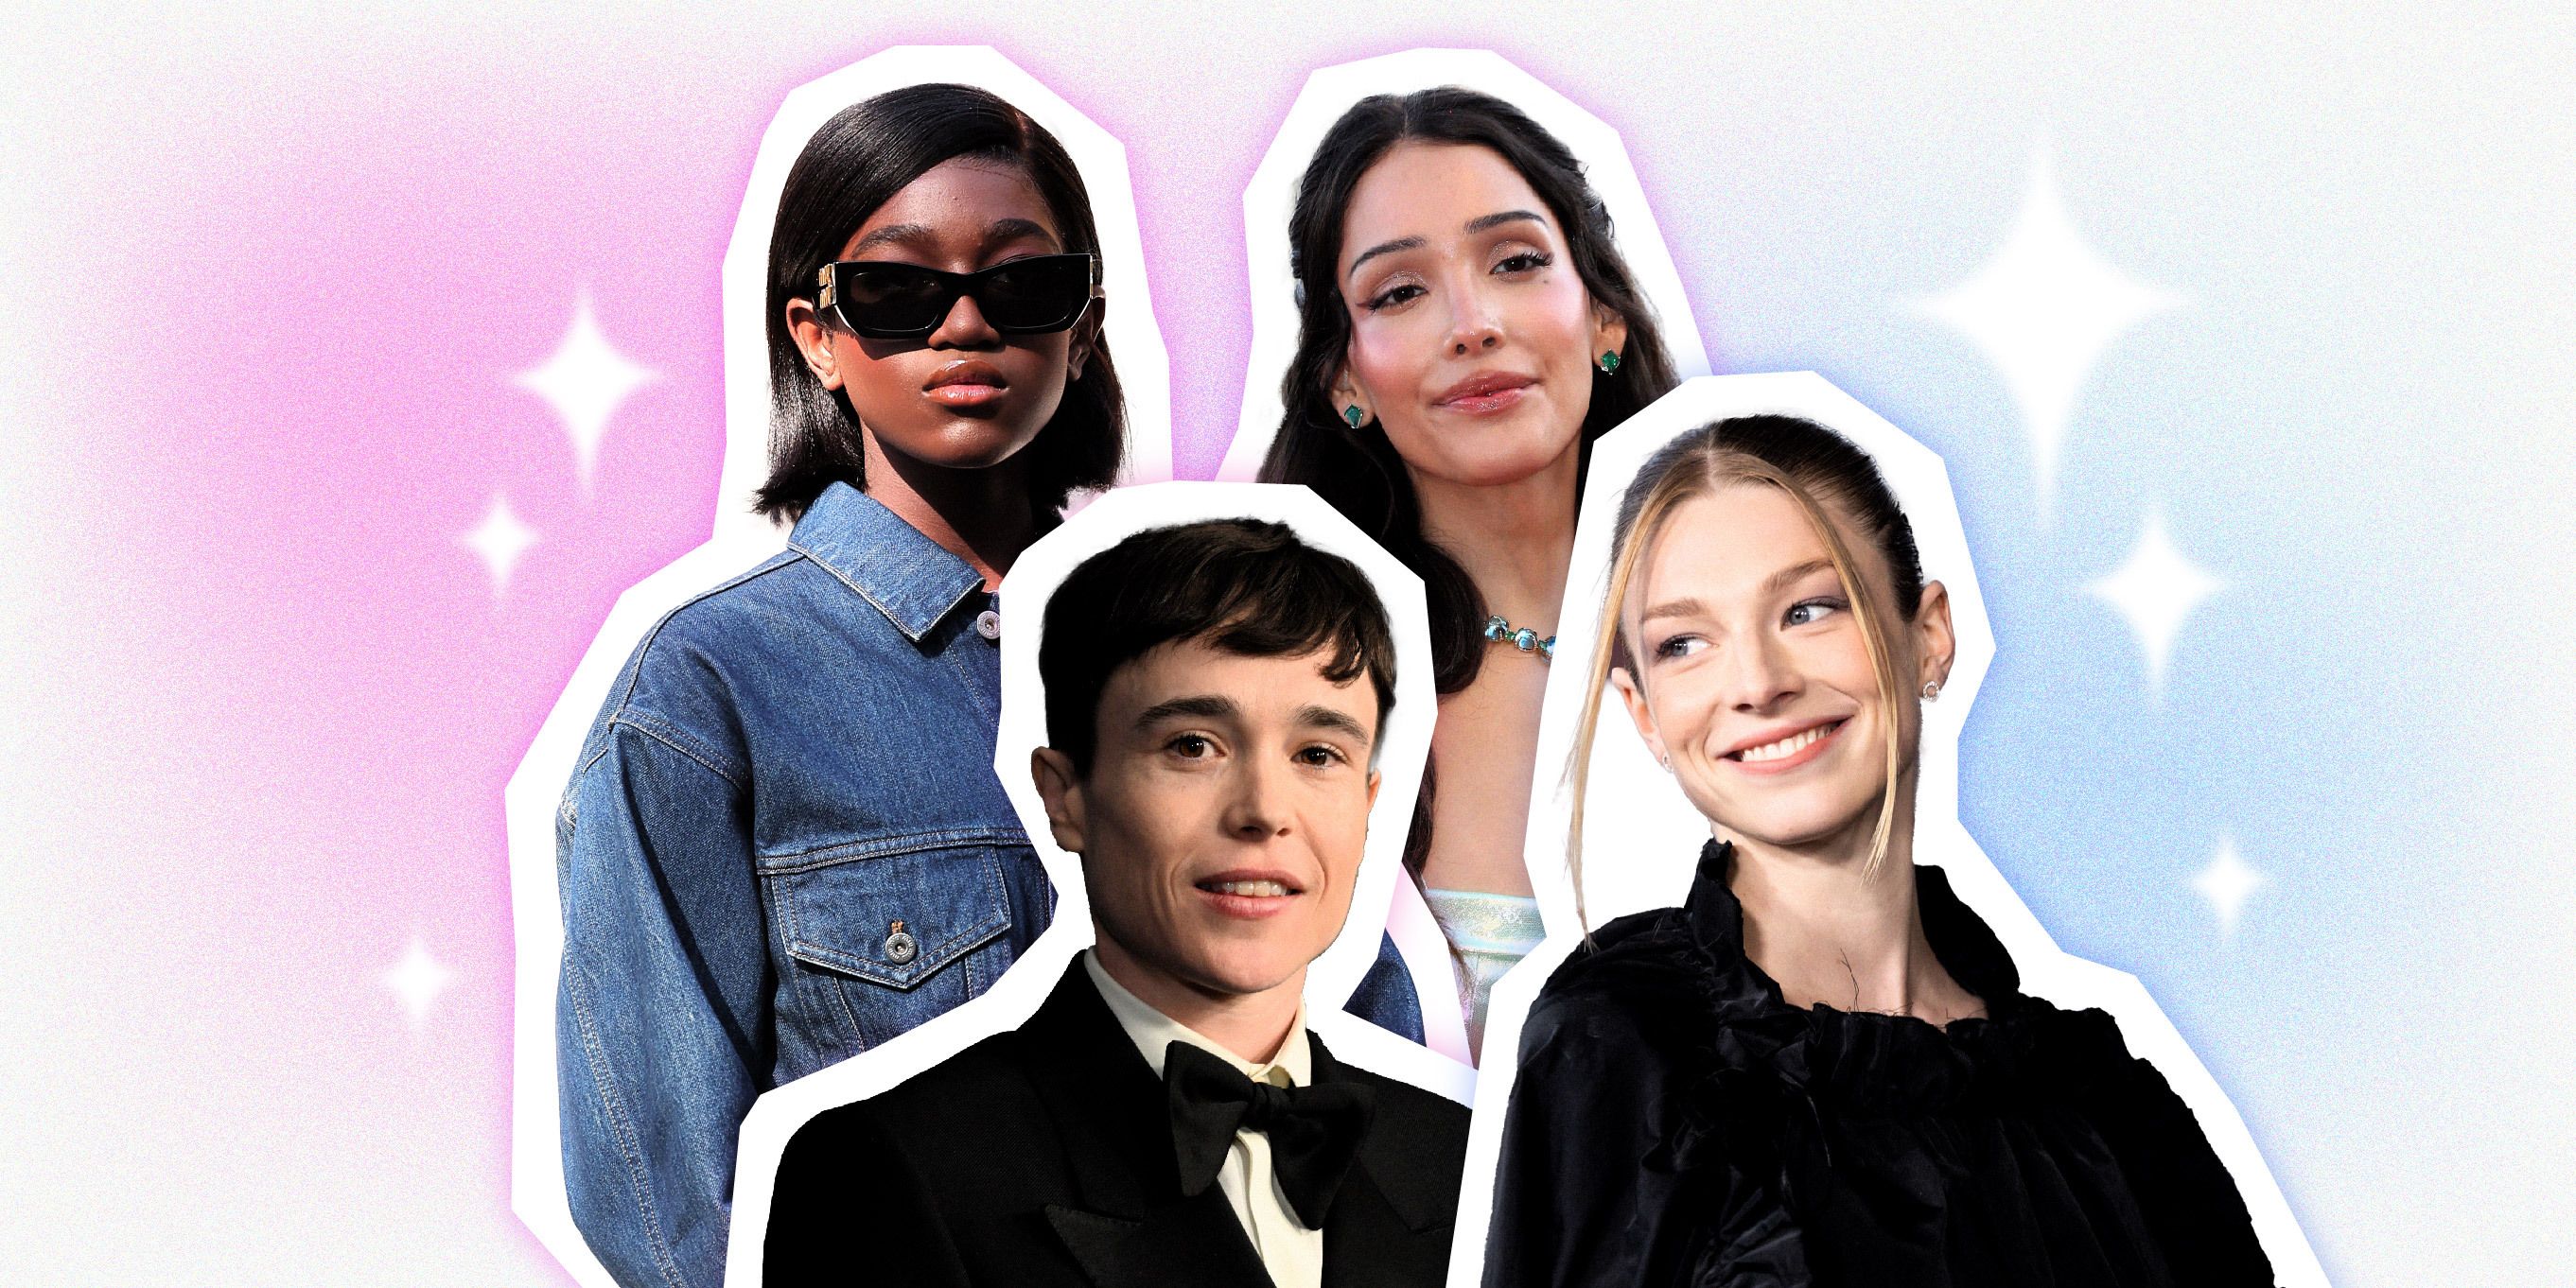 30 Transgender Celebrities to Know